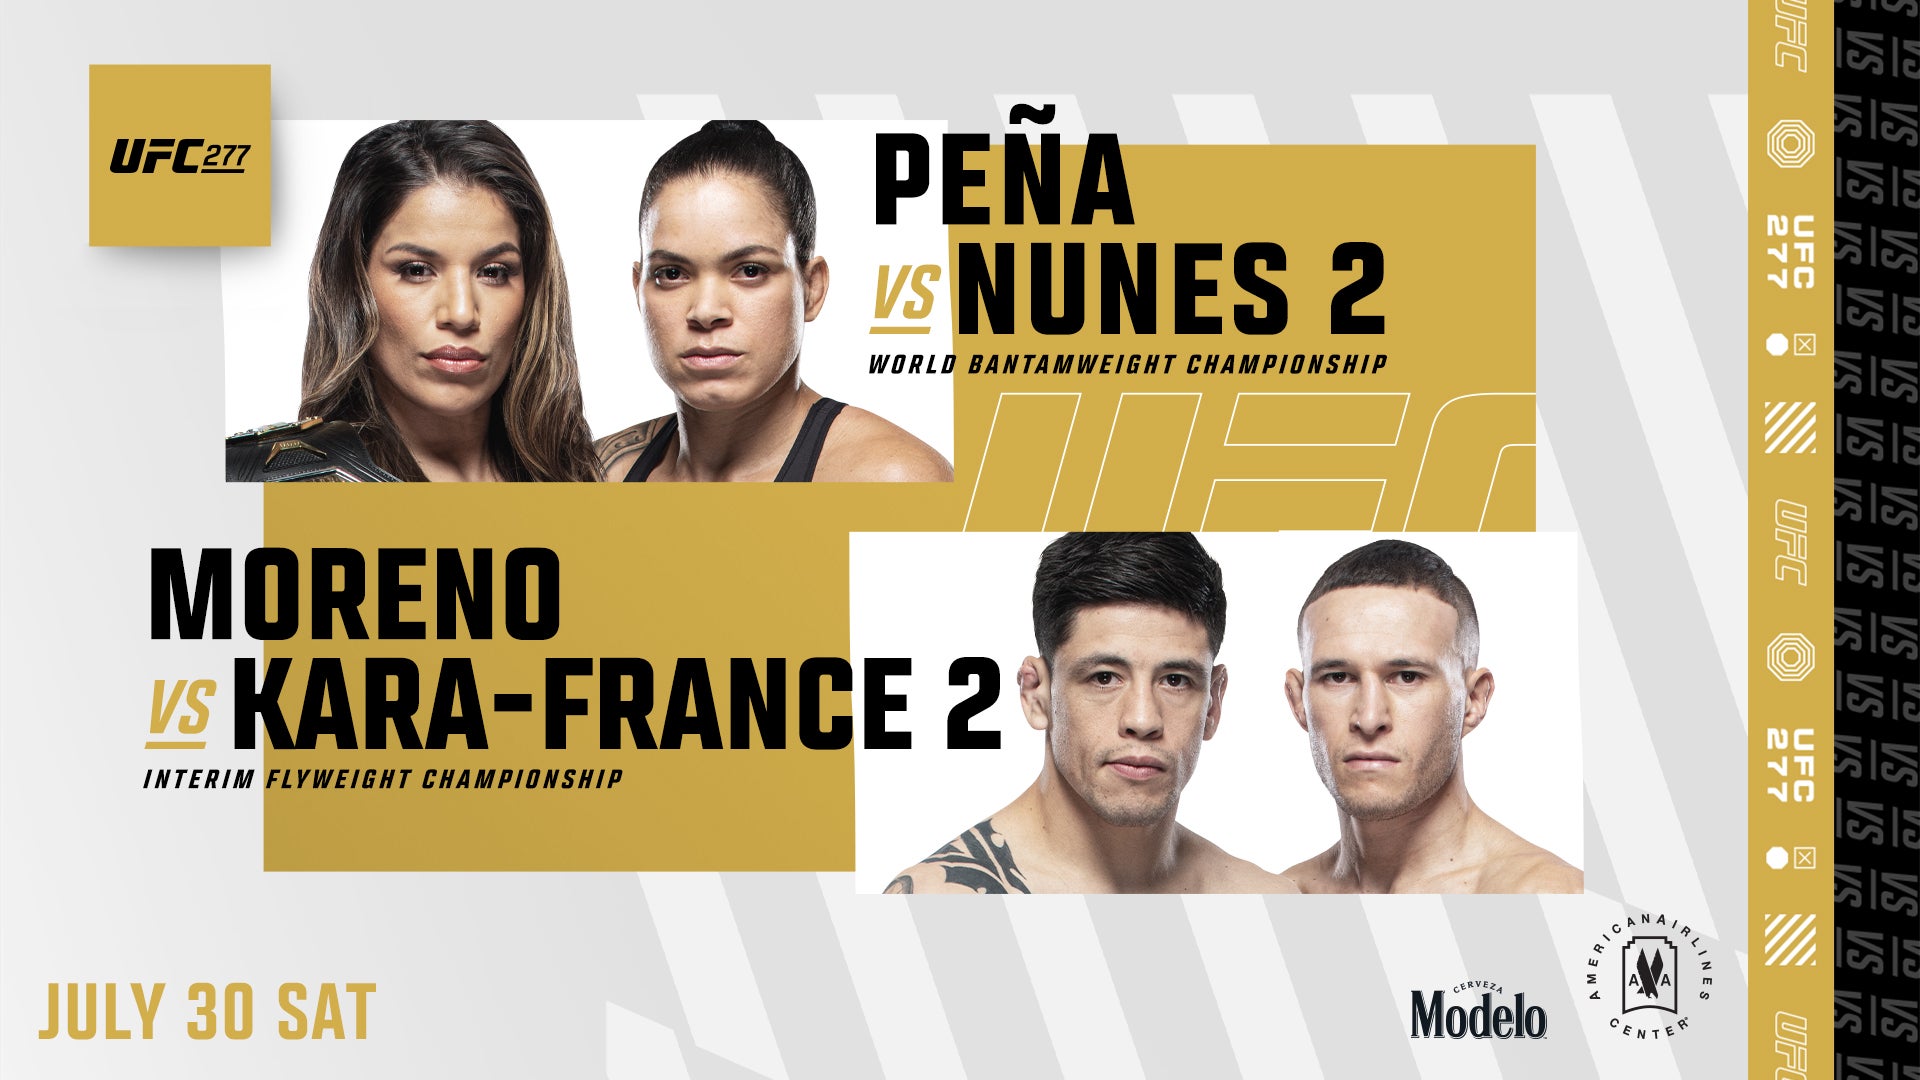 UFC 277: Pena vs Nunes - #1 Rated Wynwood Bar | Wynwood Restaurant & Sports  Bar - Grails Miami